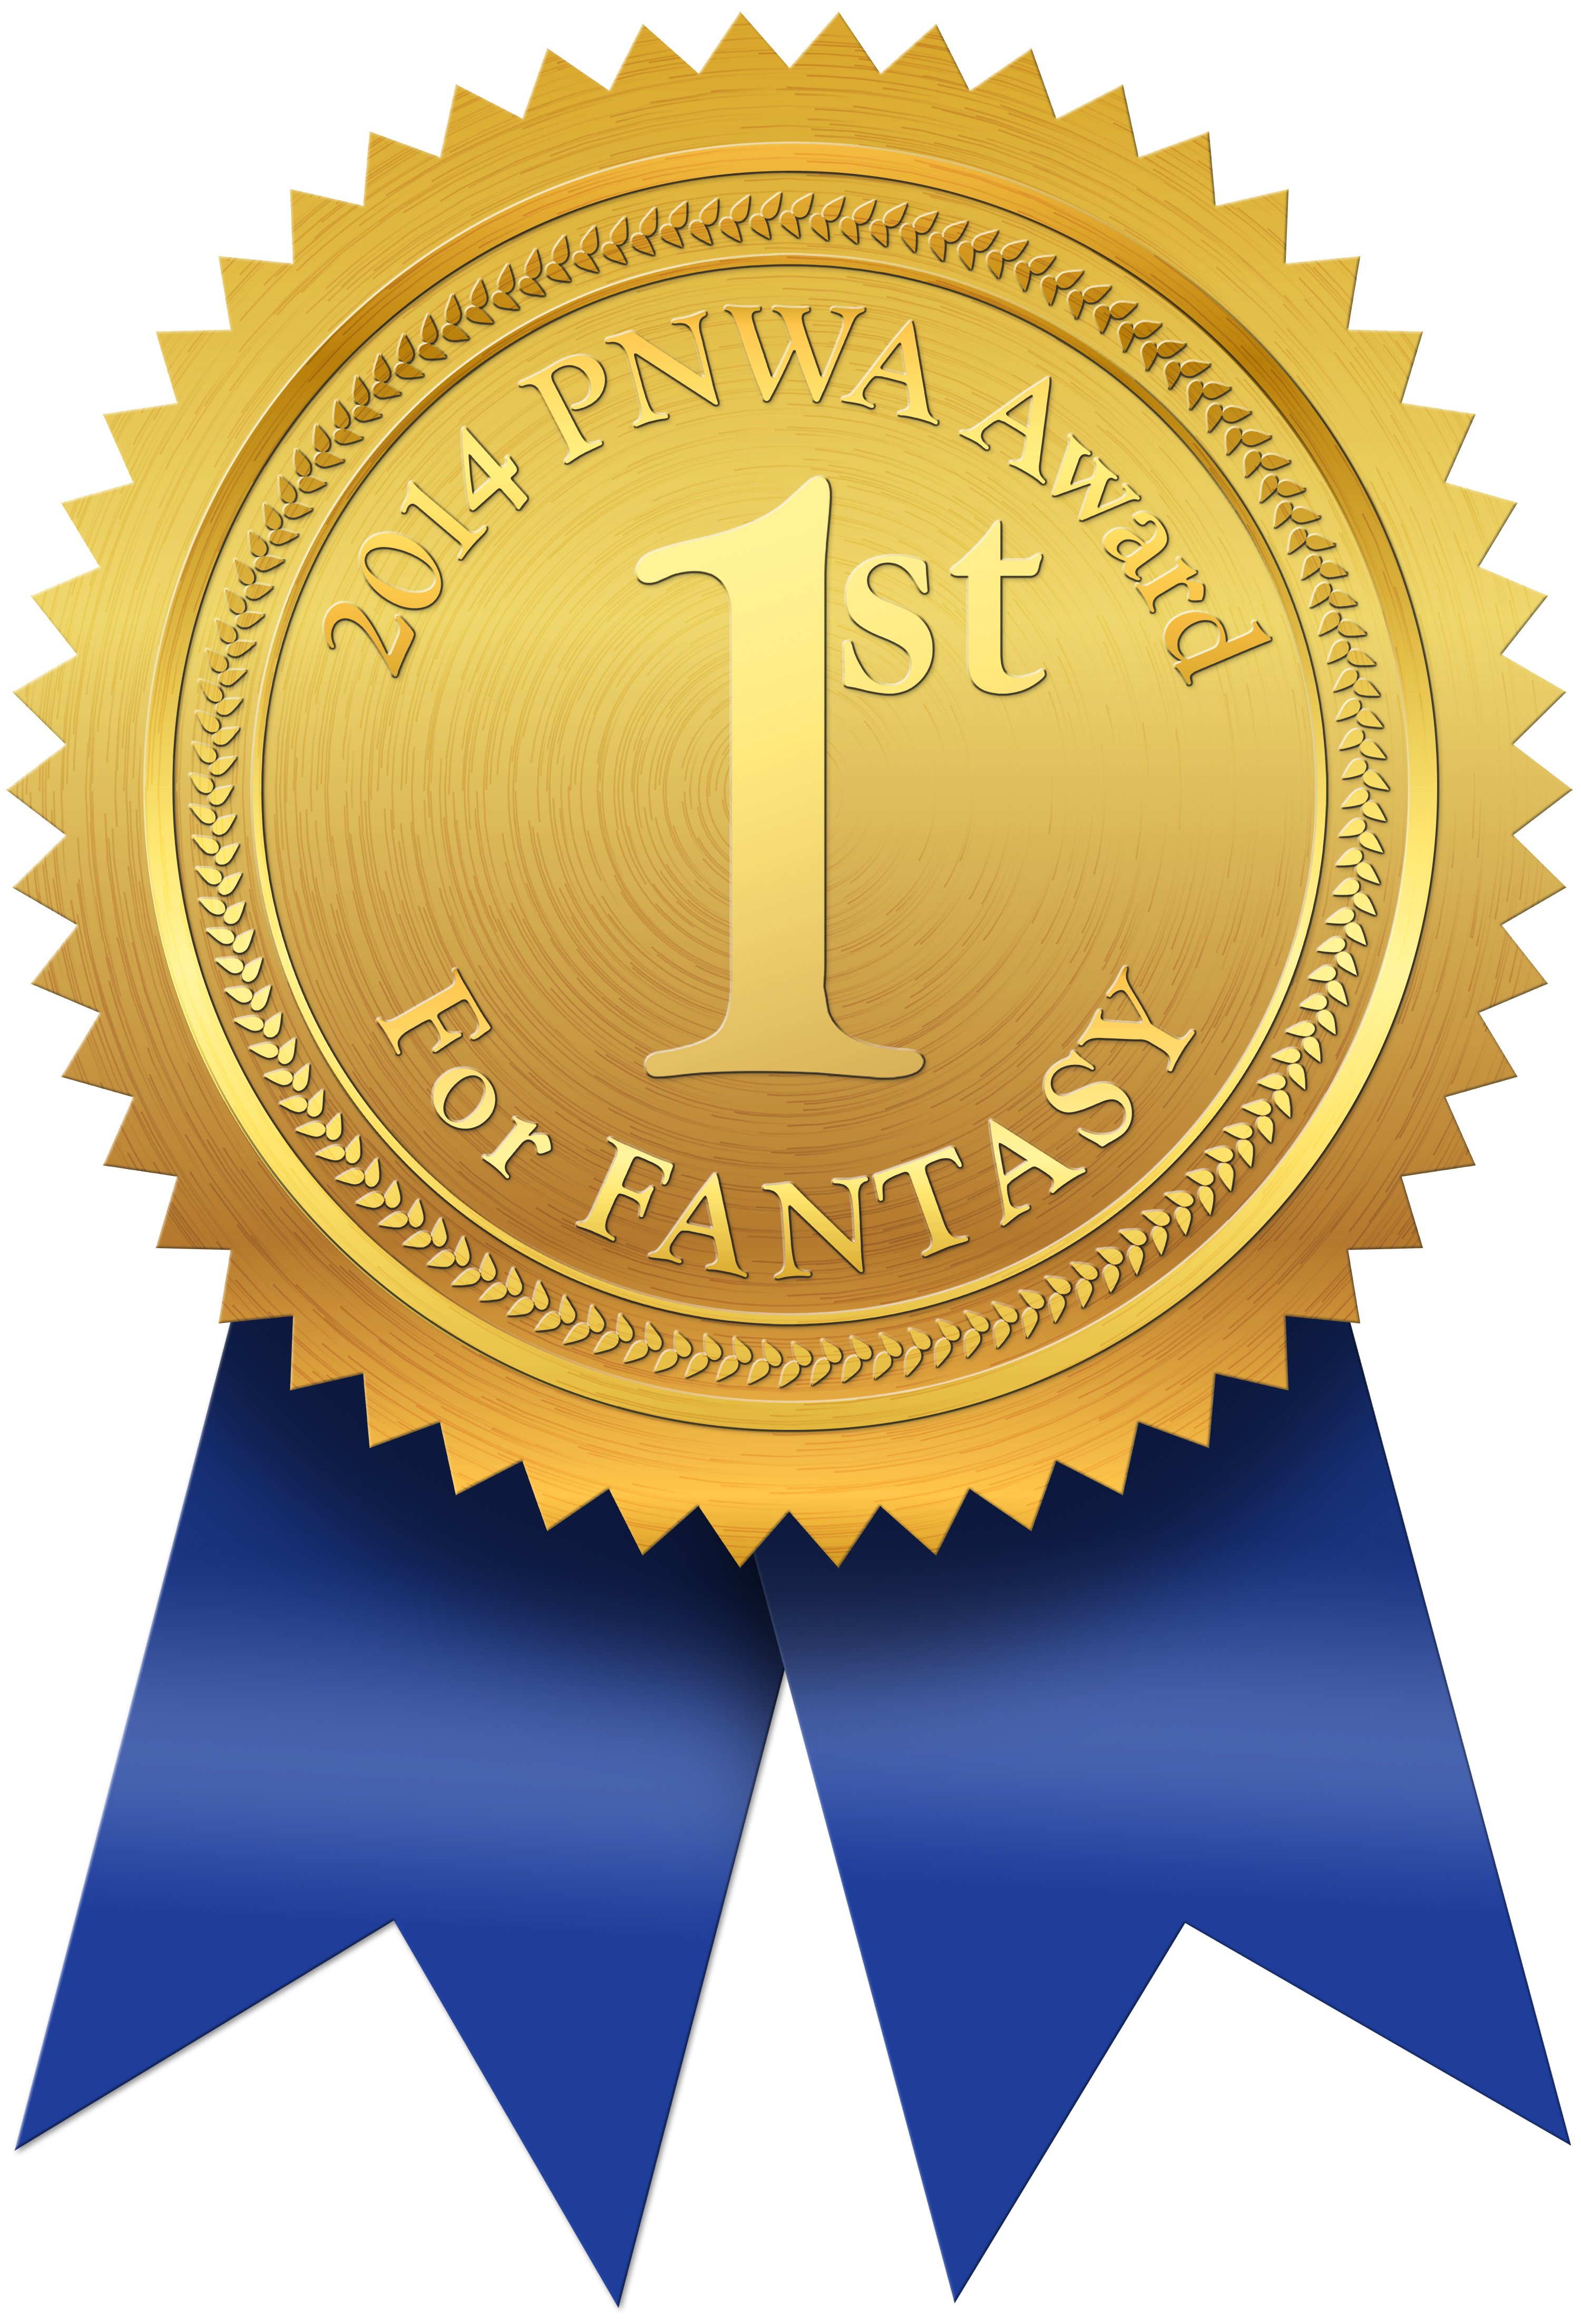 PNWA Award for Fantasy